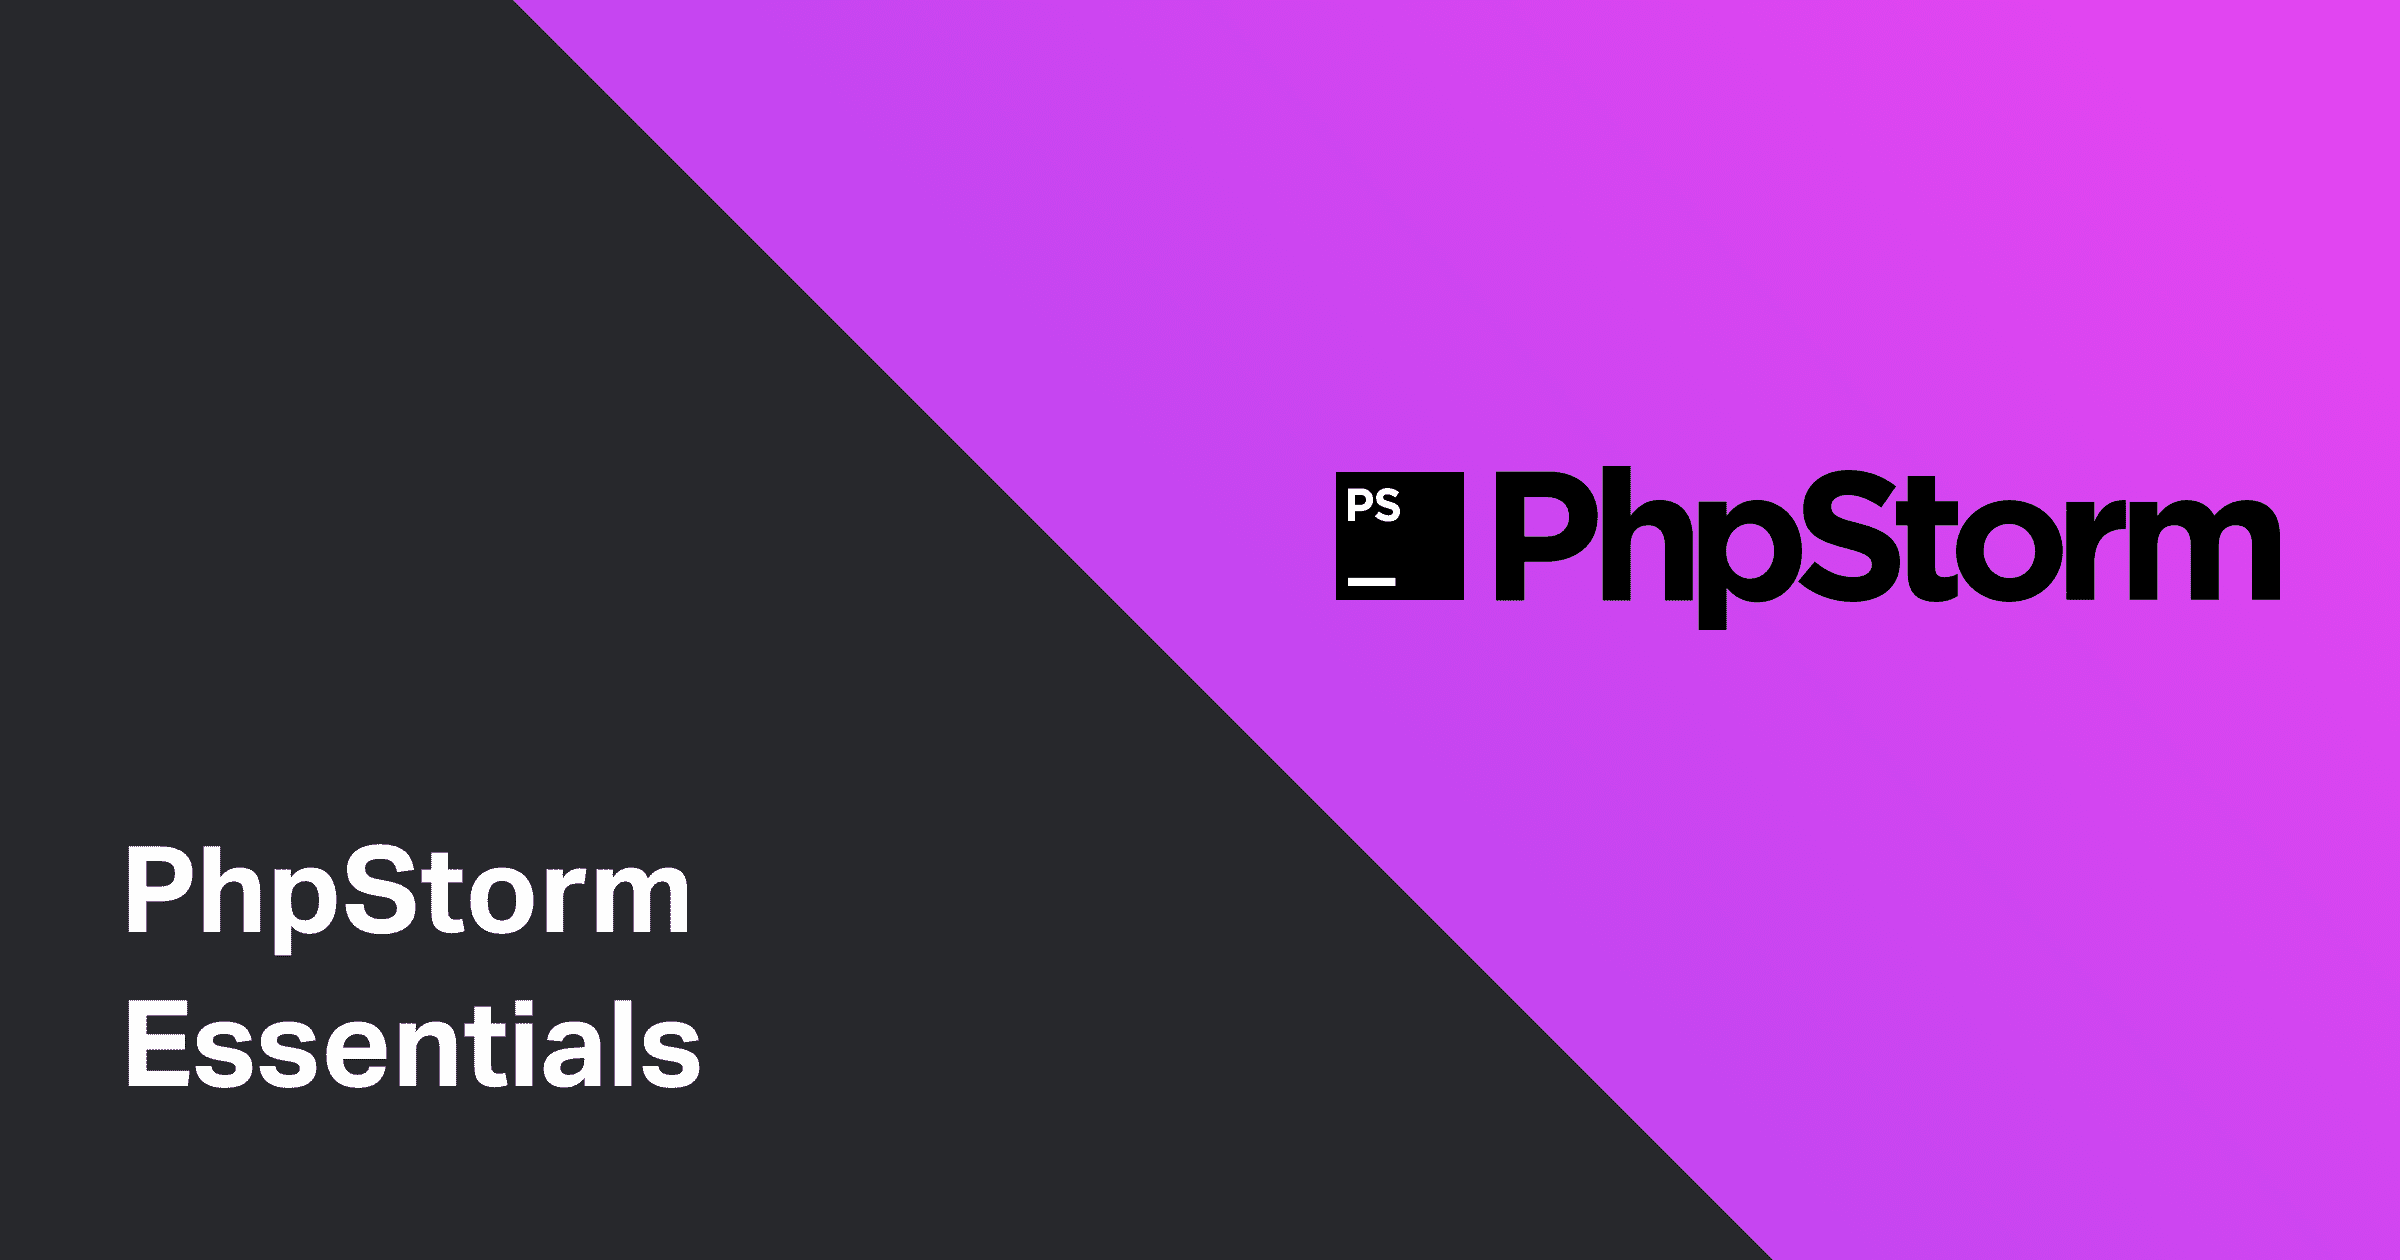 PhpStorm essentials